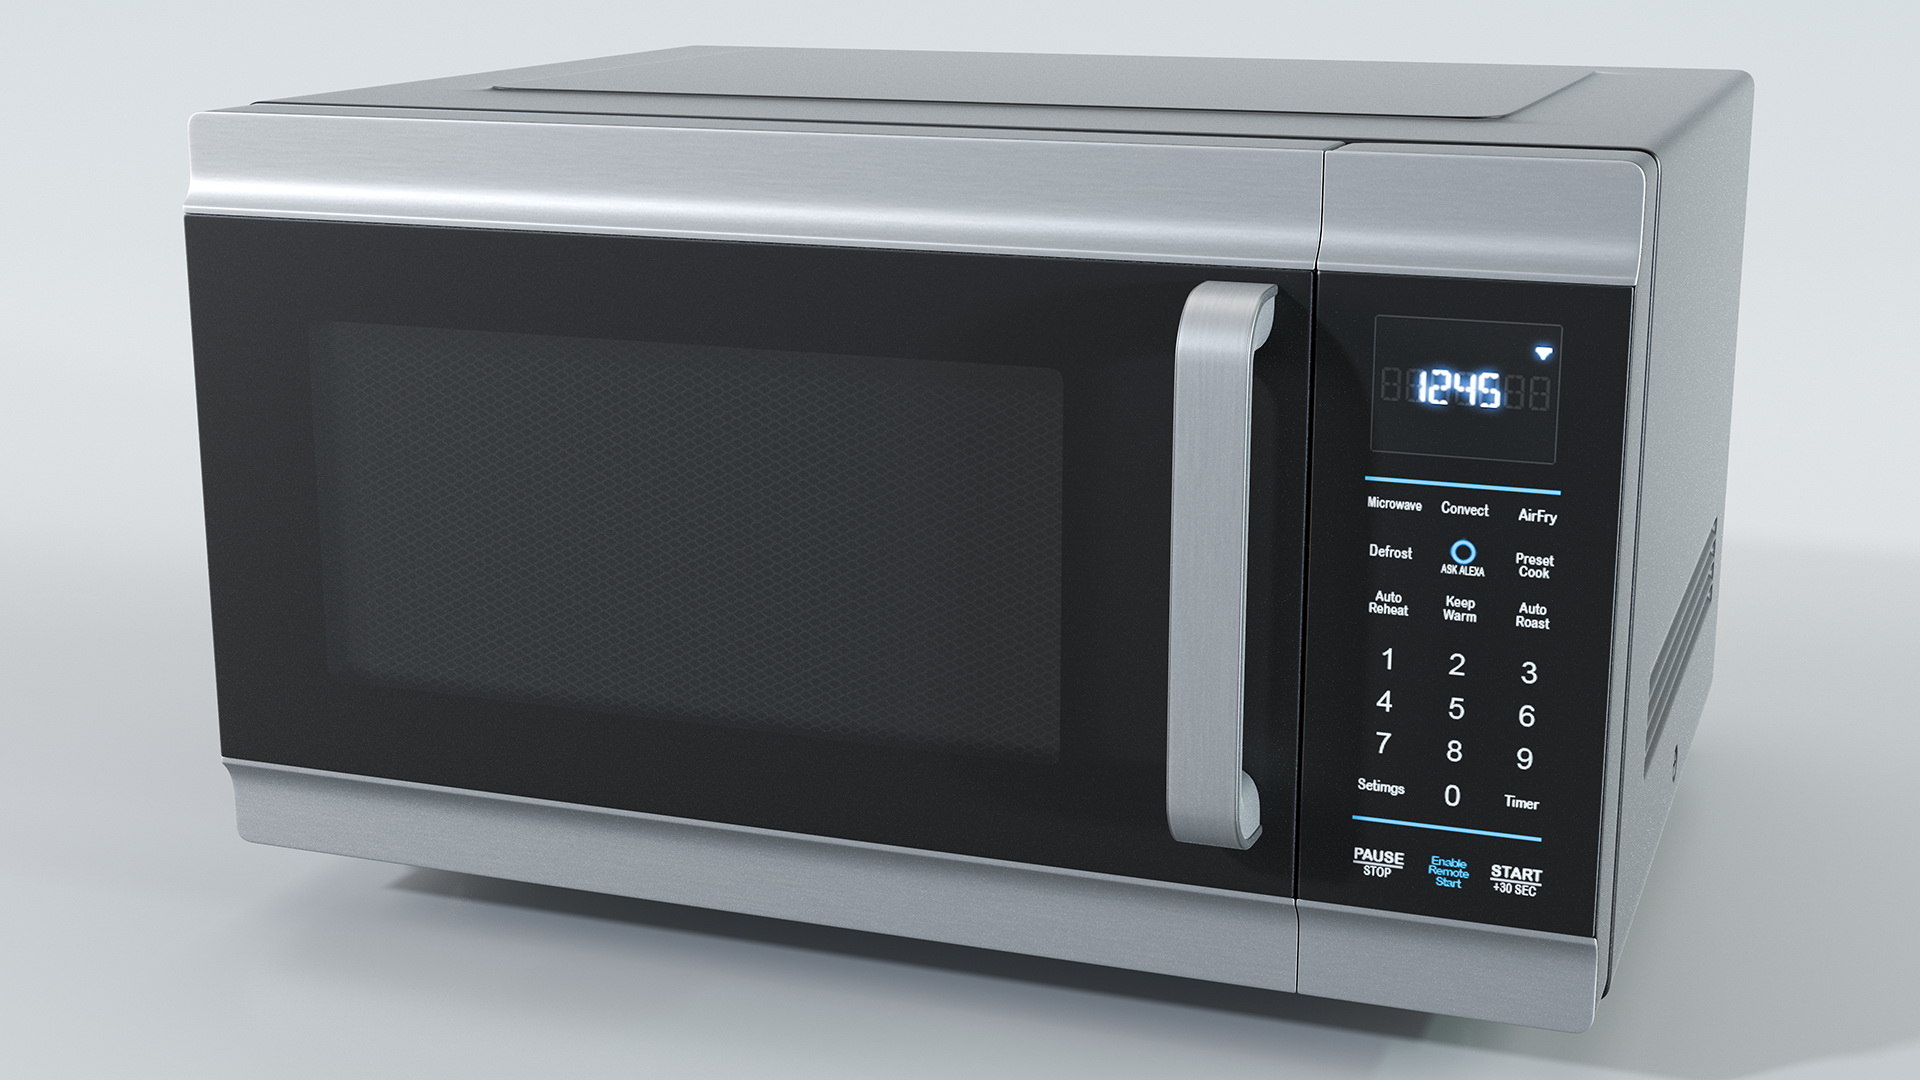 3D amazon alexa smart oven model - TurboSquid 1496640